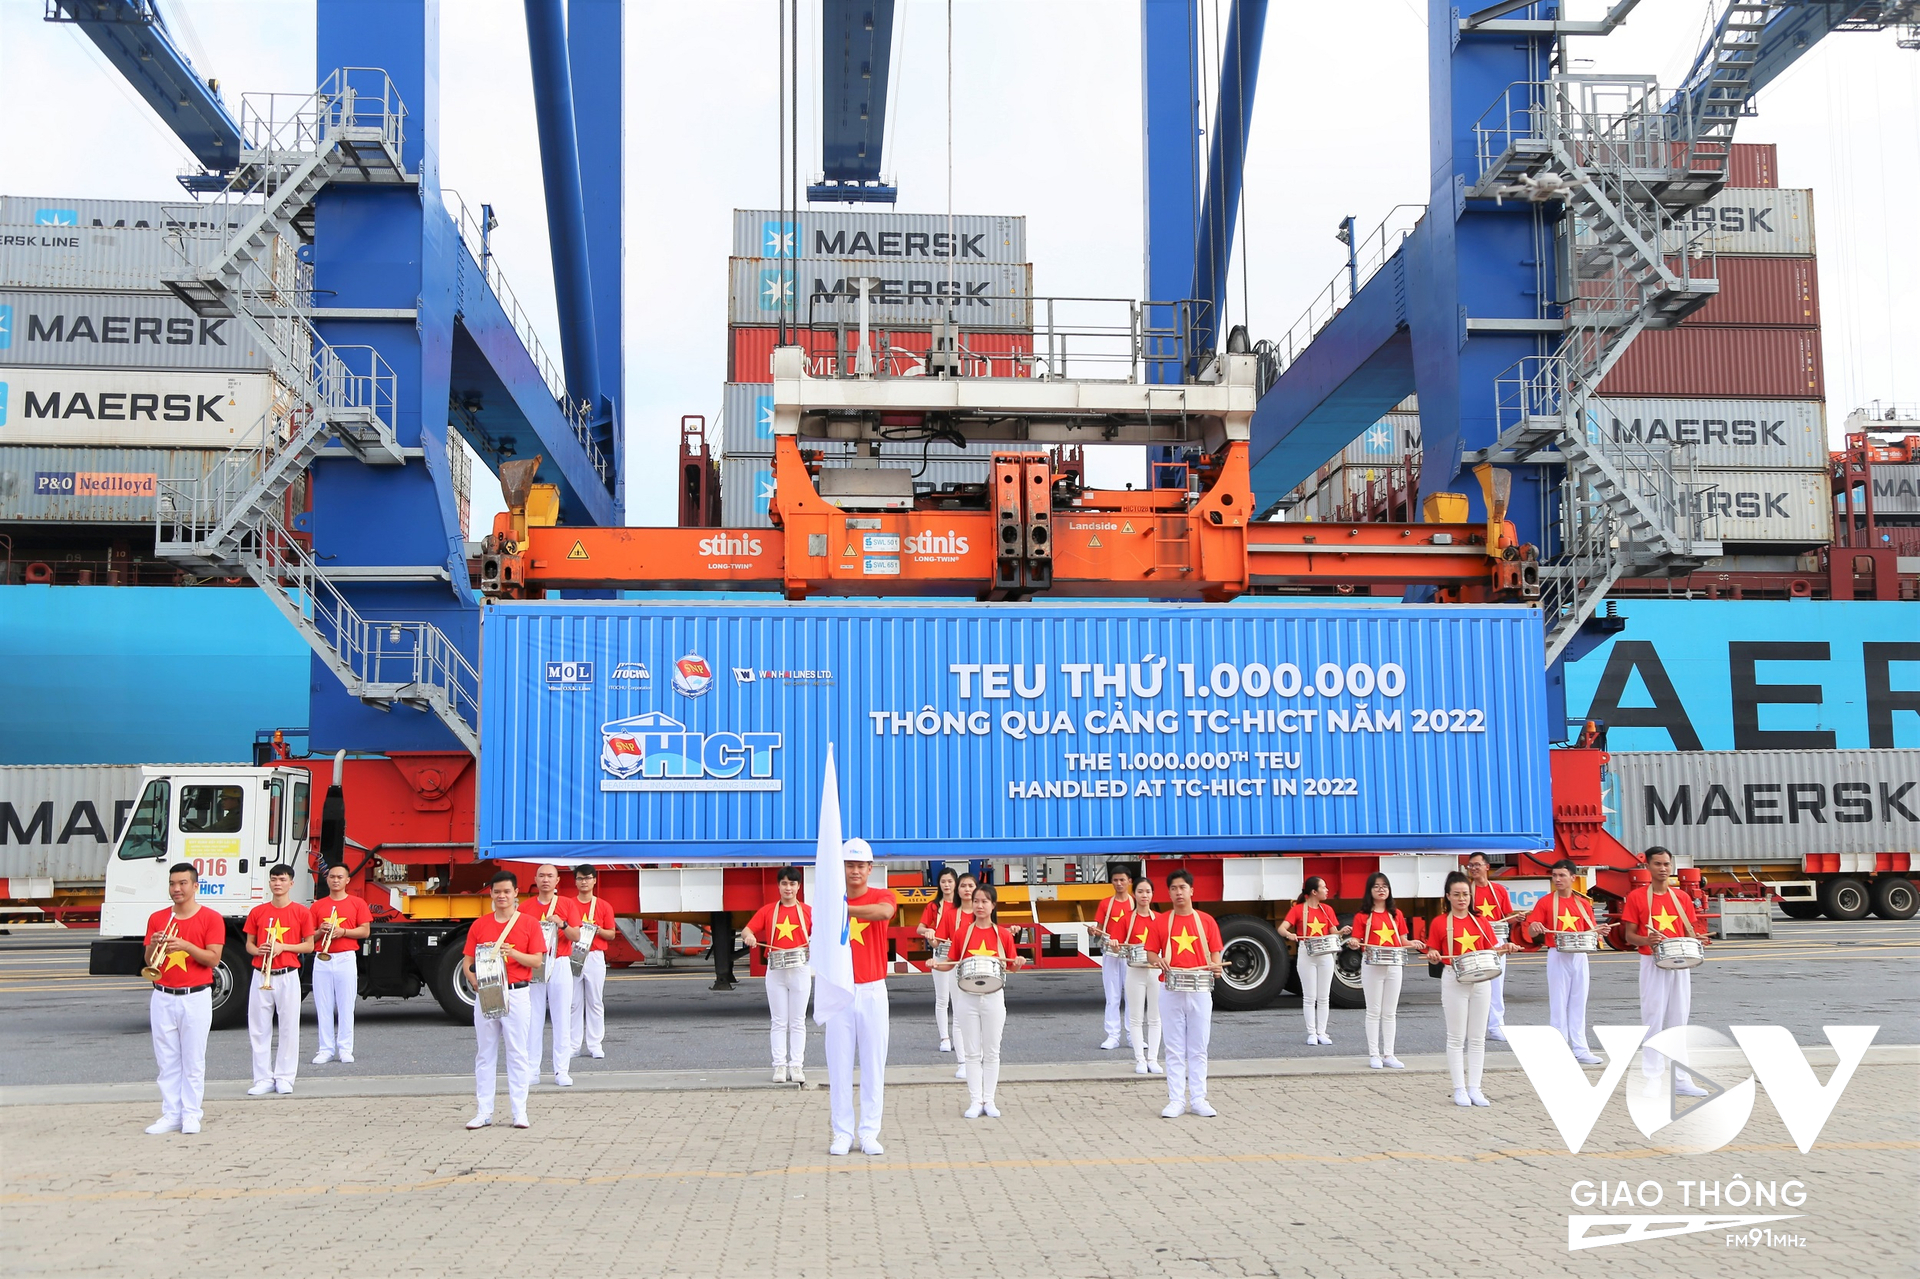 Cảng container quốc tế Tân Cảng Hải Phòng đón Teu thứ 1 triệu thông qua (tháng 11/2022)